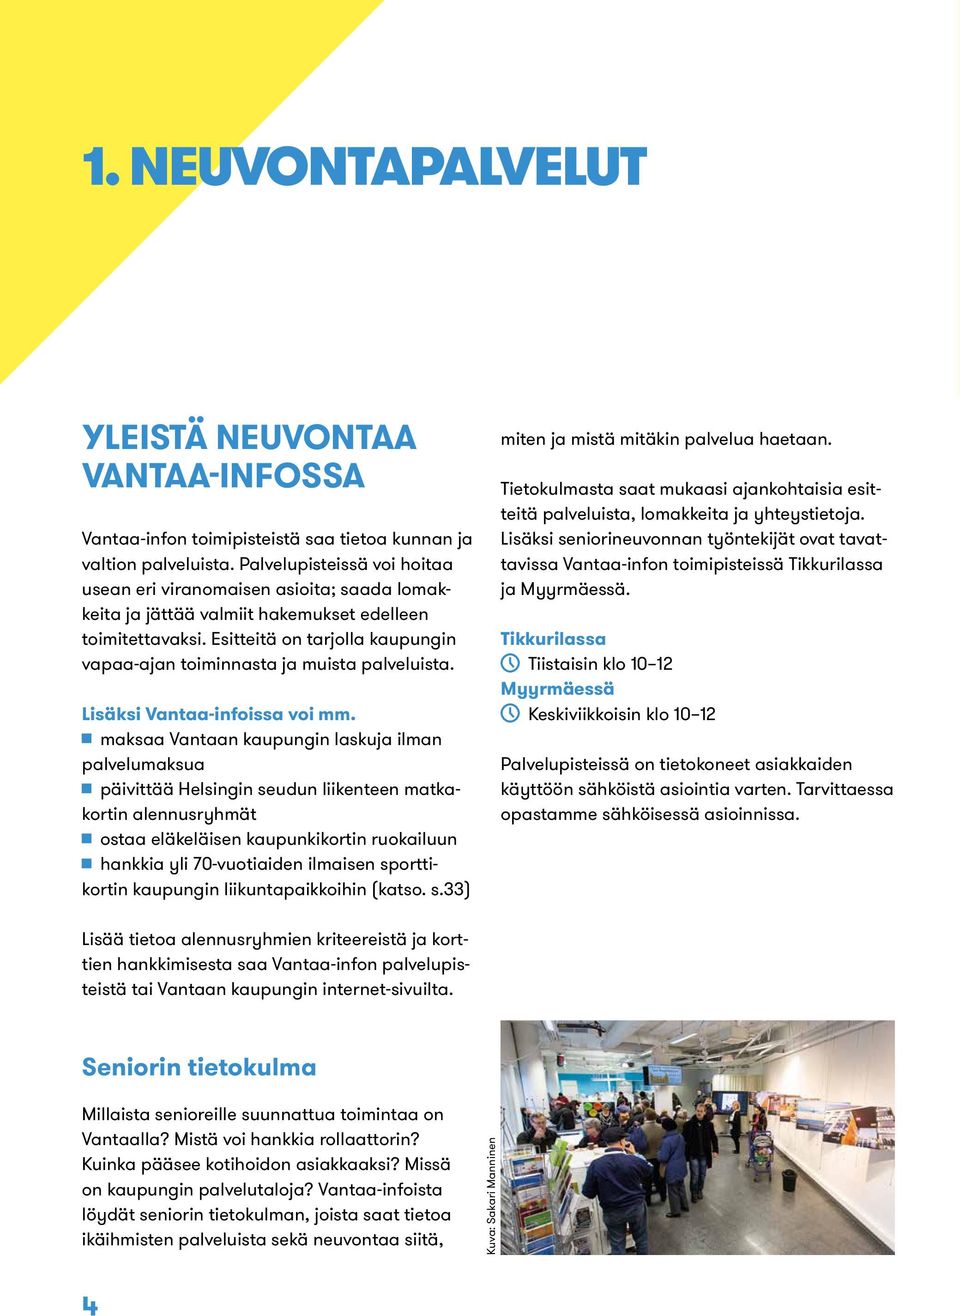 Esitteitä on tarjolla kaupungin vapaa-ajan toiminnasta ja muista palveluista. Lisäksi Vantaa-infoissa voi mm.